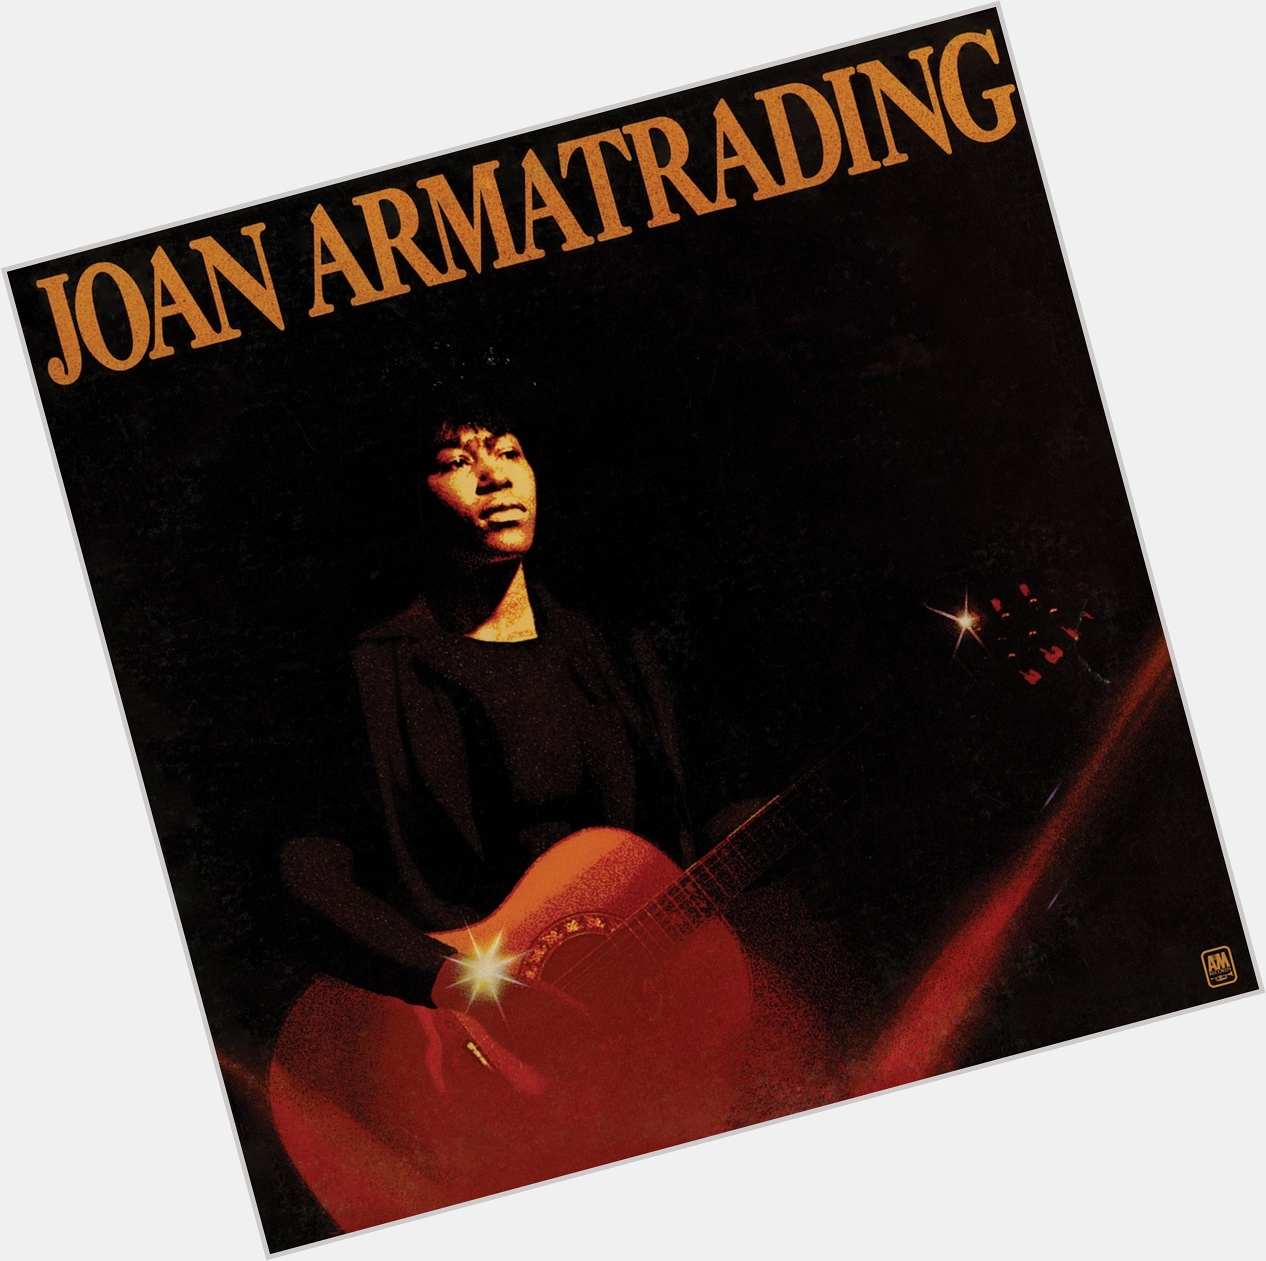 Happy 71st birthday to Joan Armatrading! 